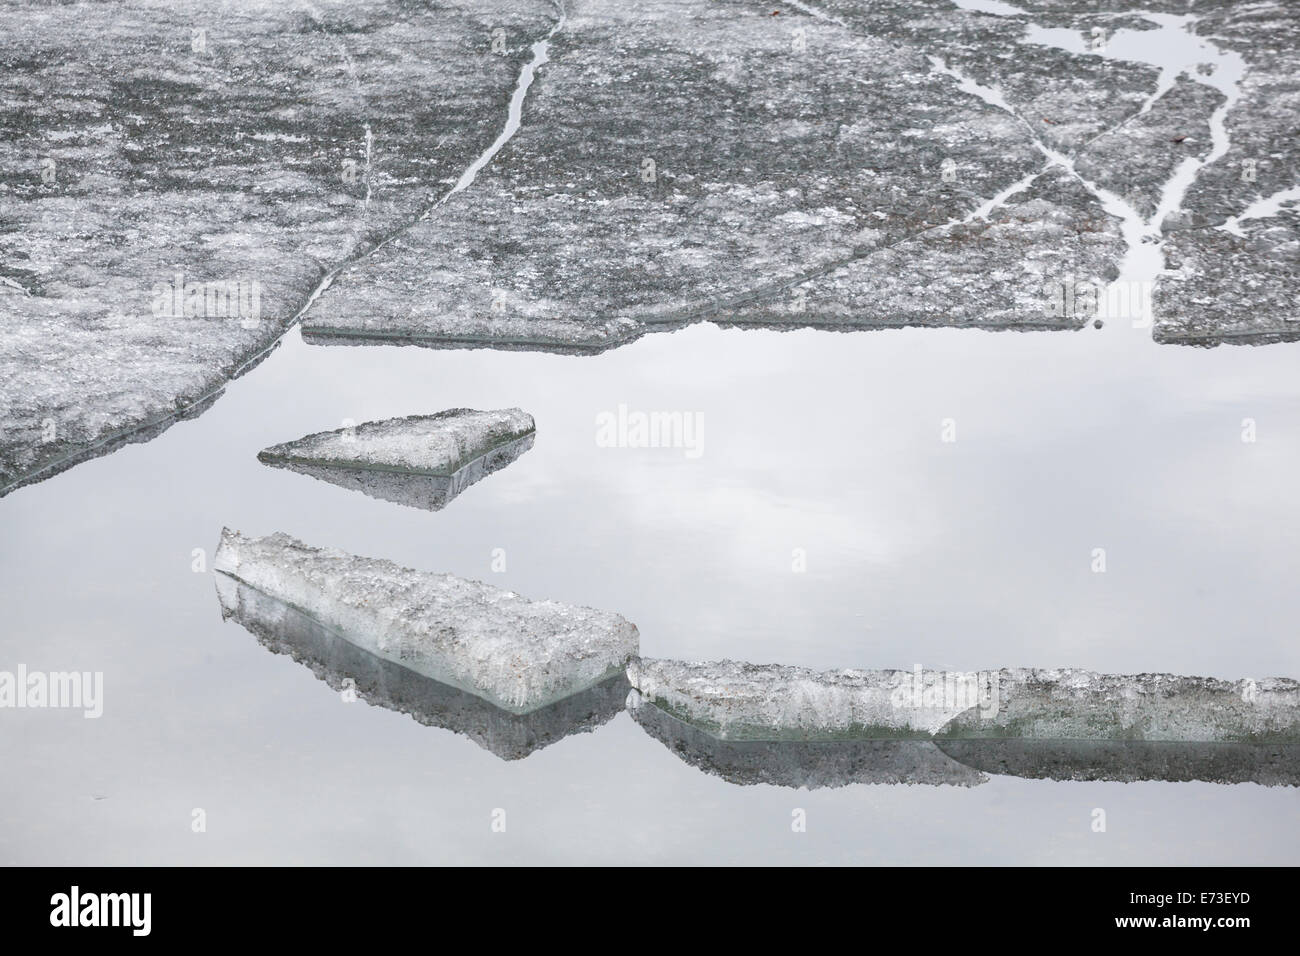 Dérive de glace flottante à Mirror Lake State Wayside Park, Alaska, Chugiak. Banque D'Images